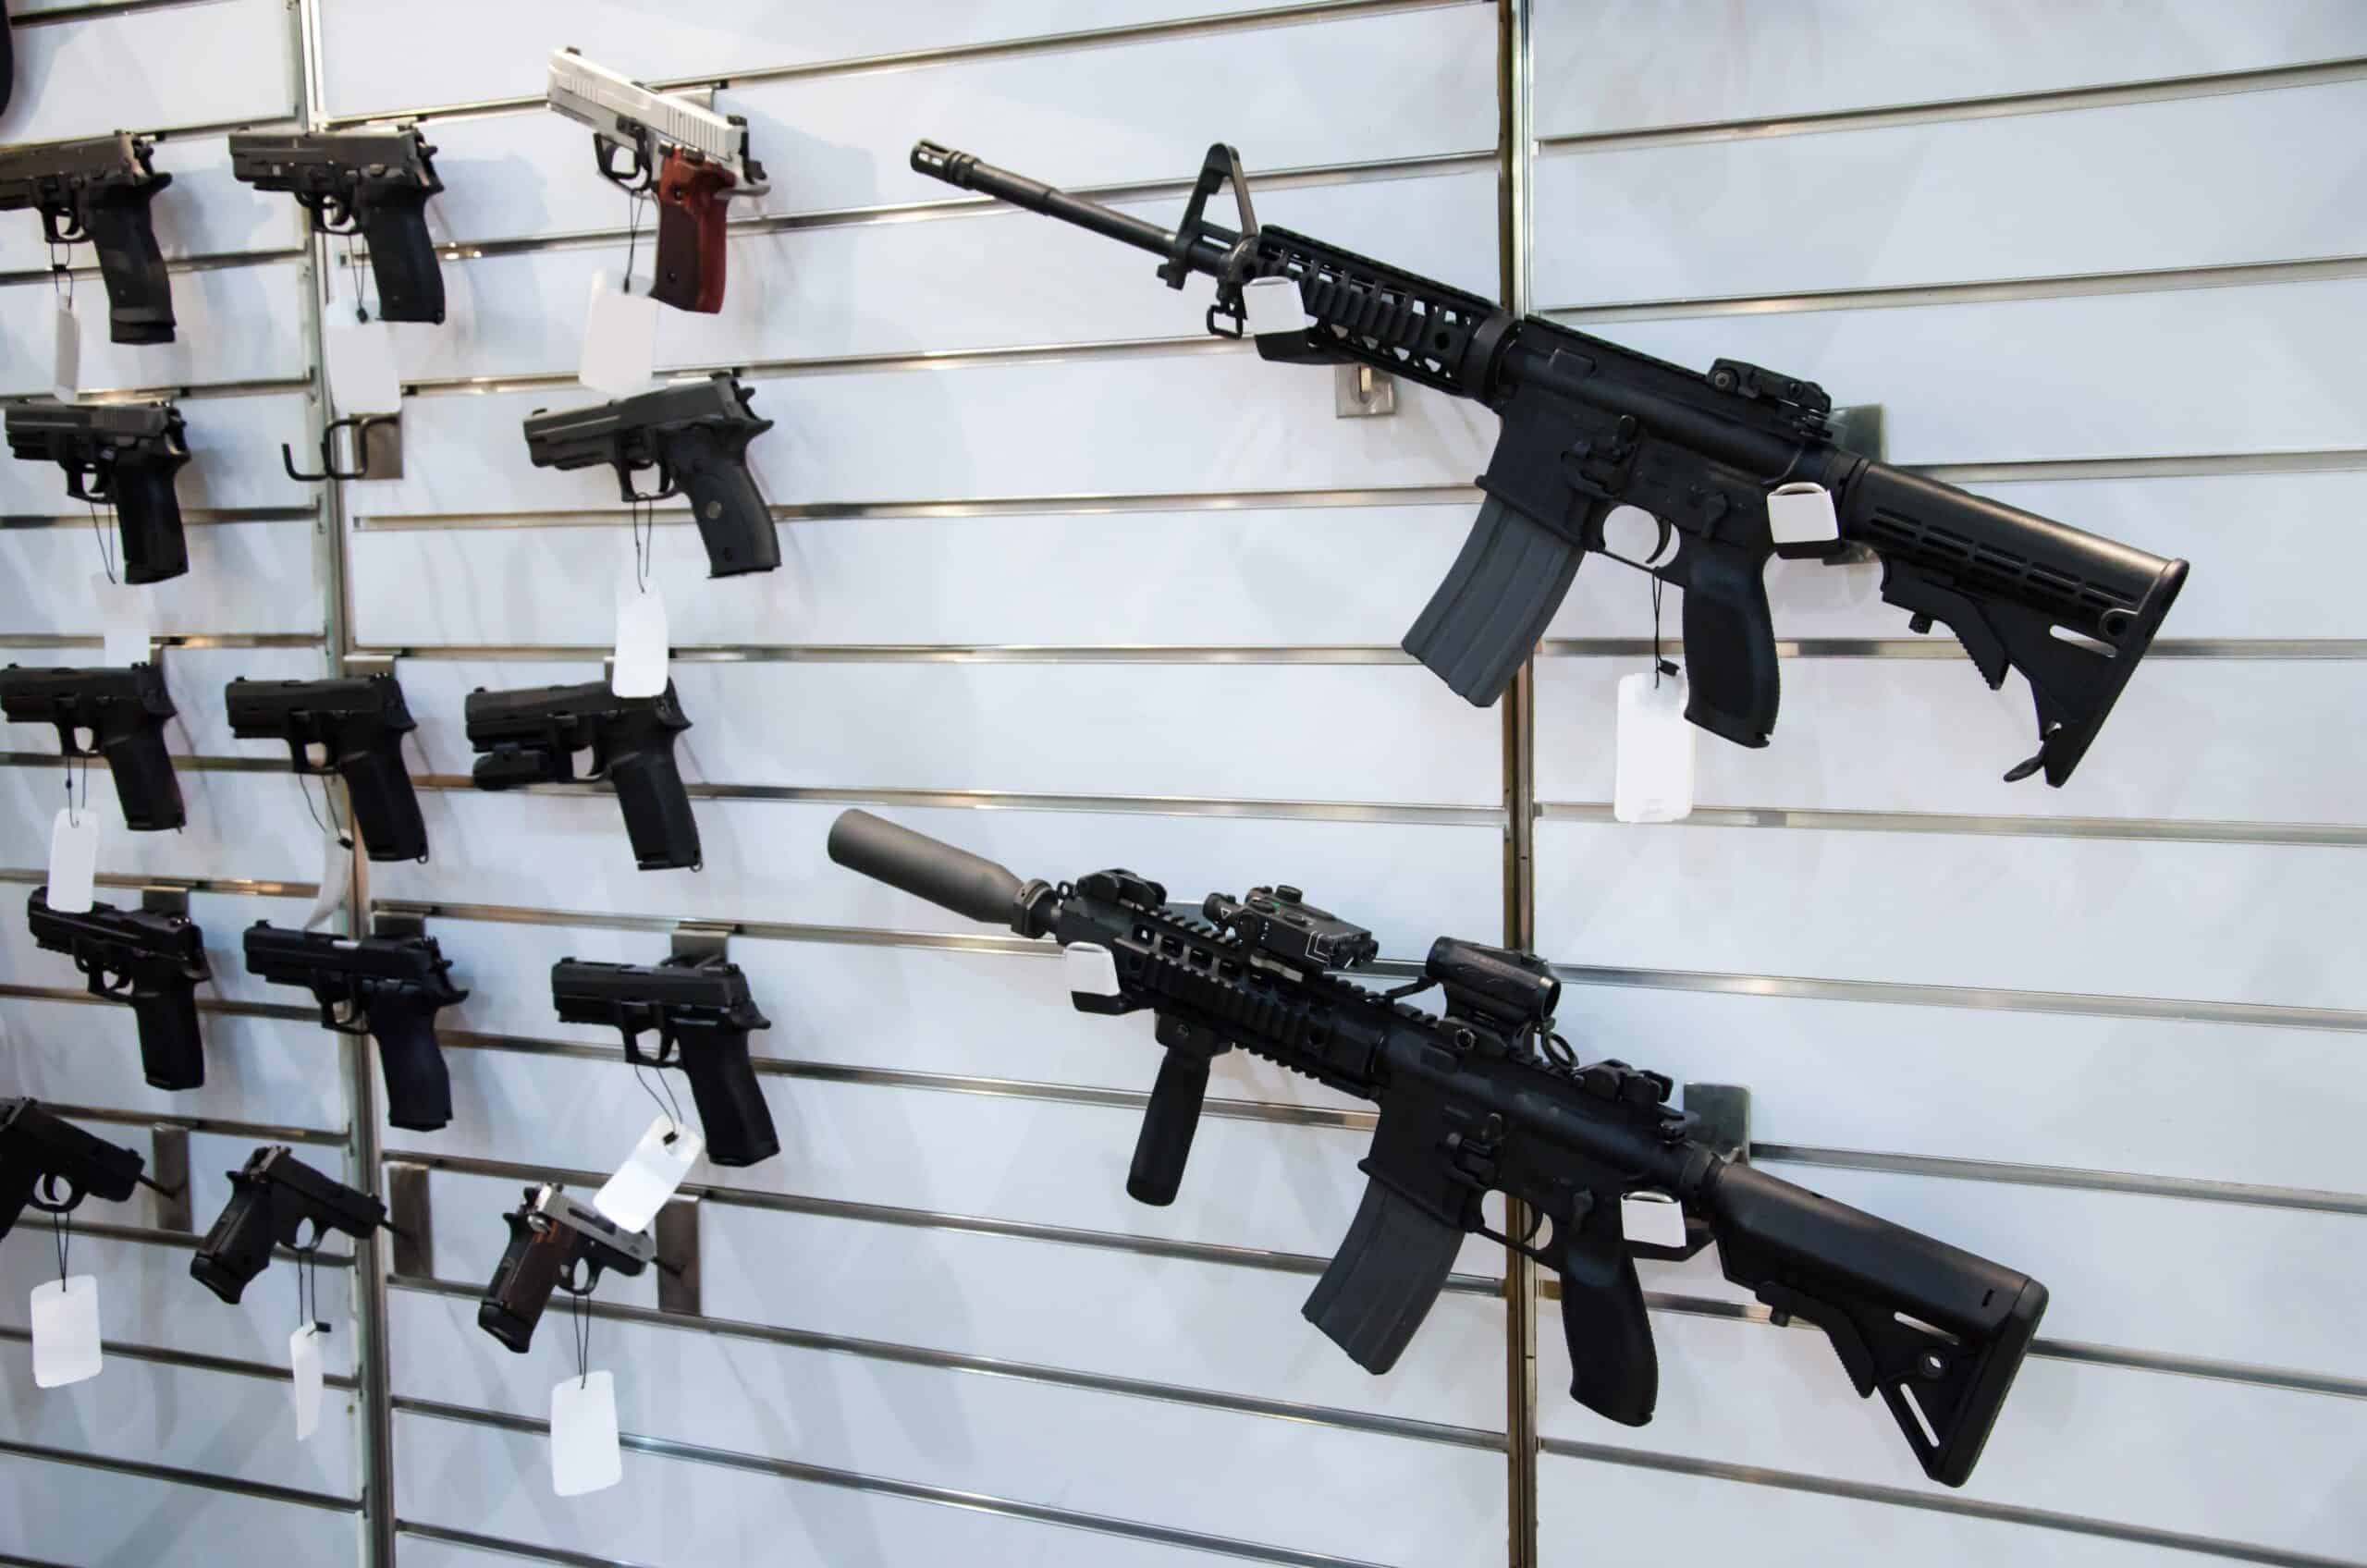 Arkansas gun show gun shop | Gun wall rack with rifles and pistol.